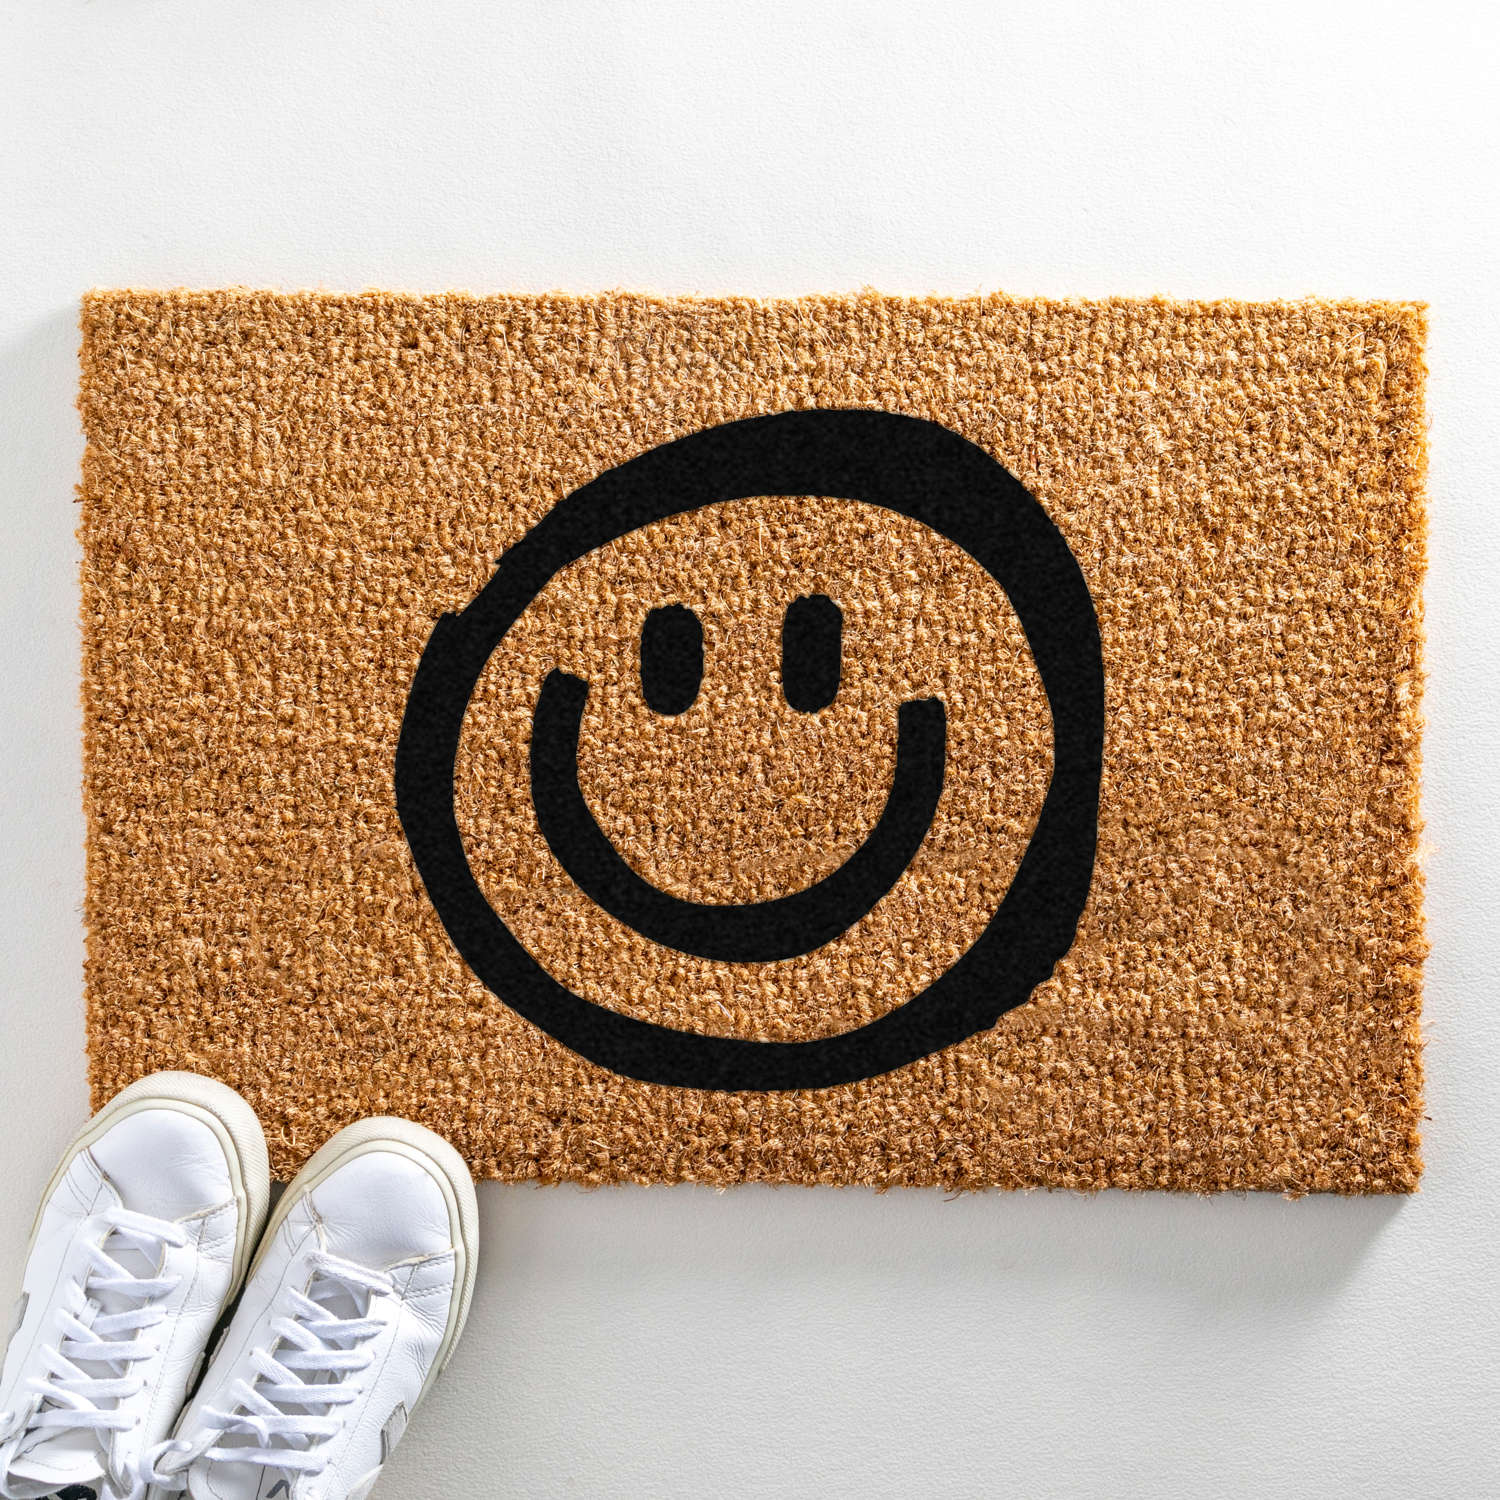 Smiley design standard size doormat